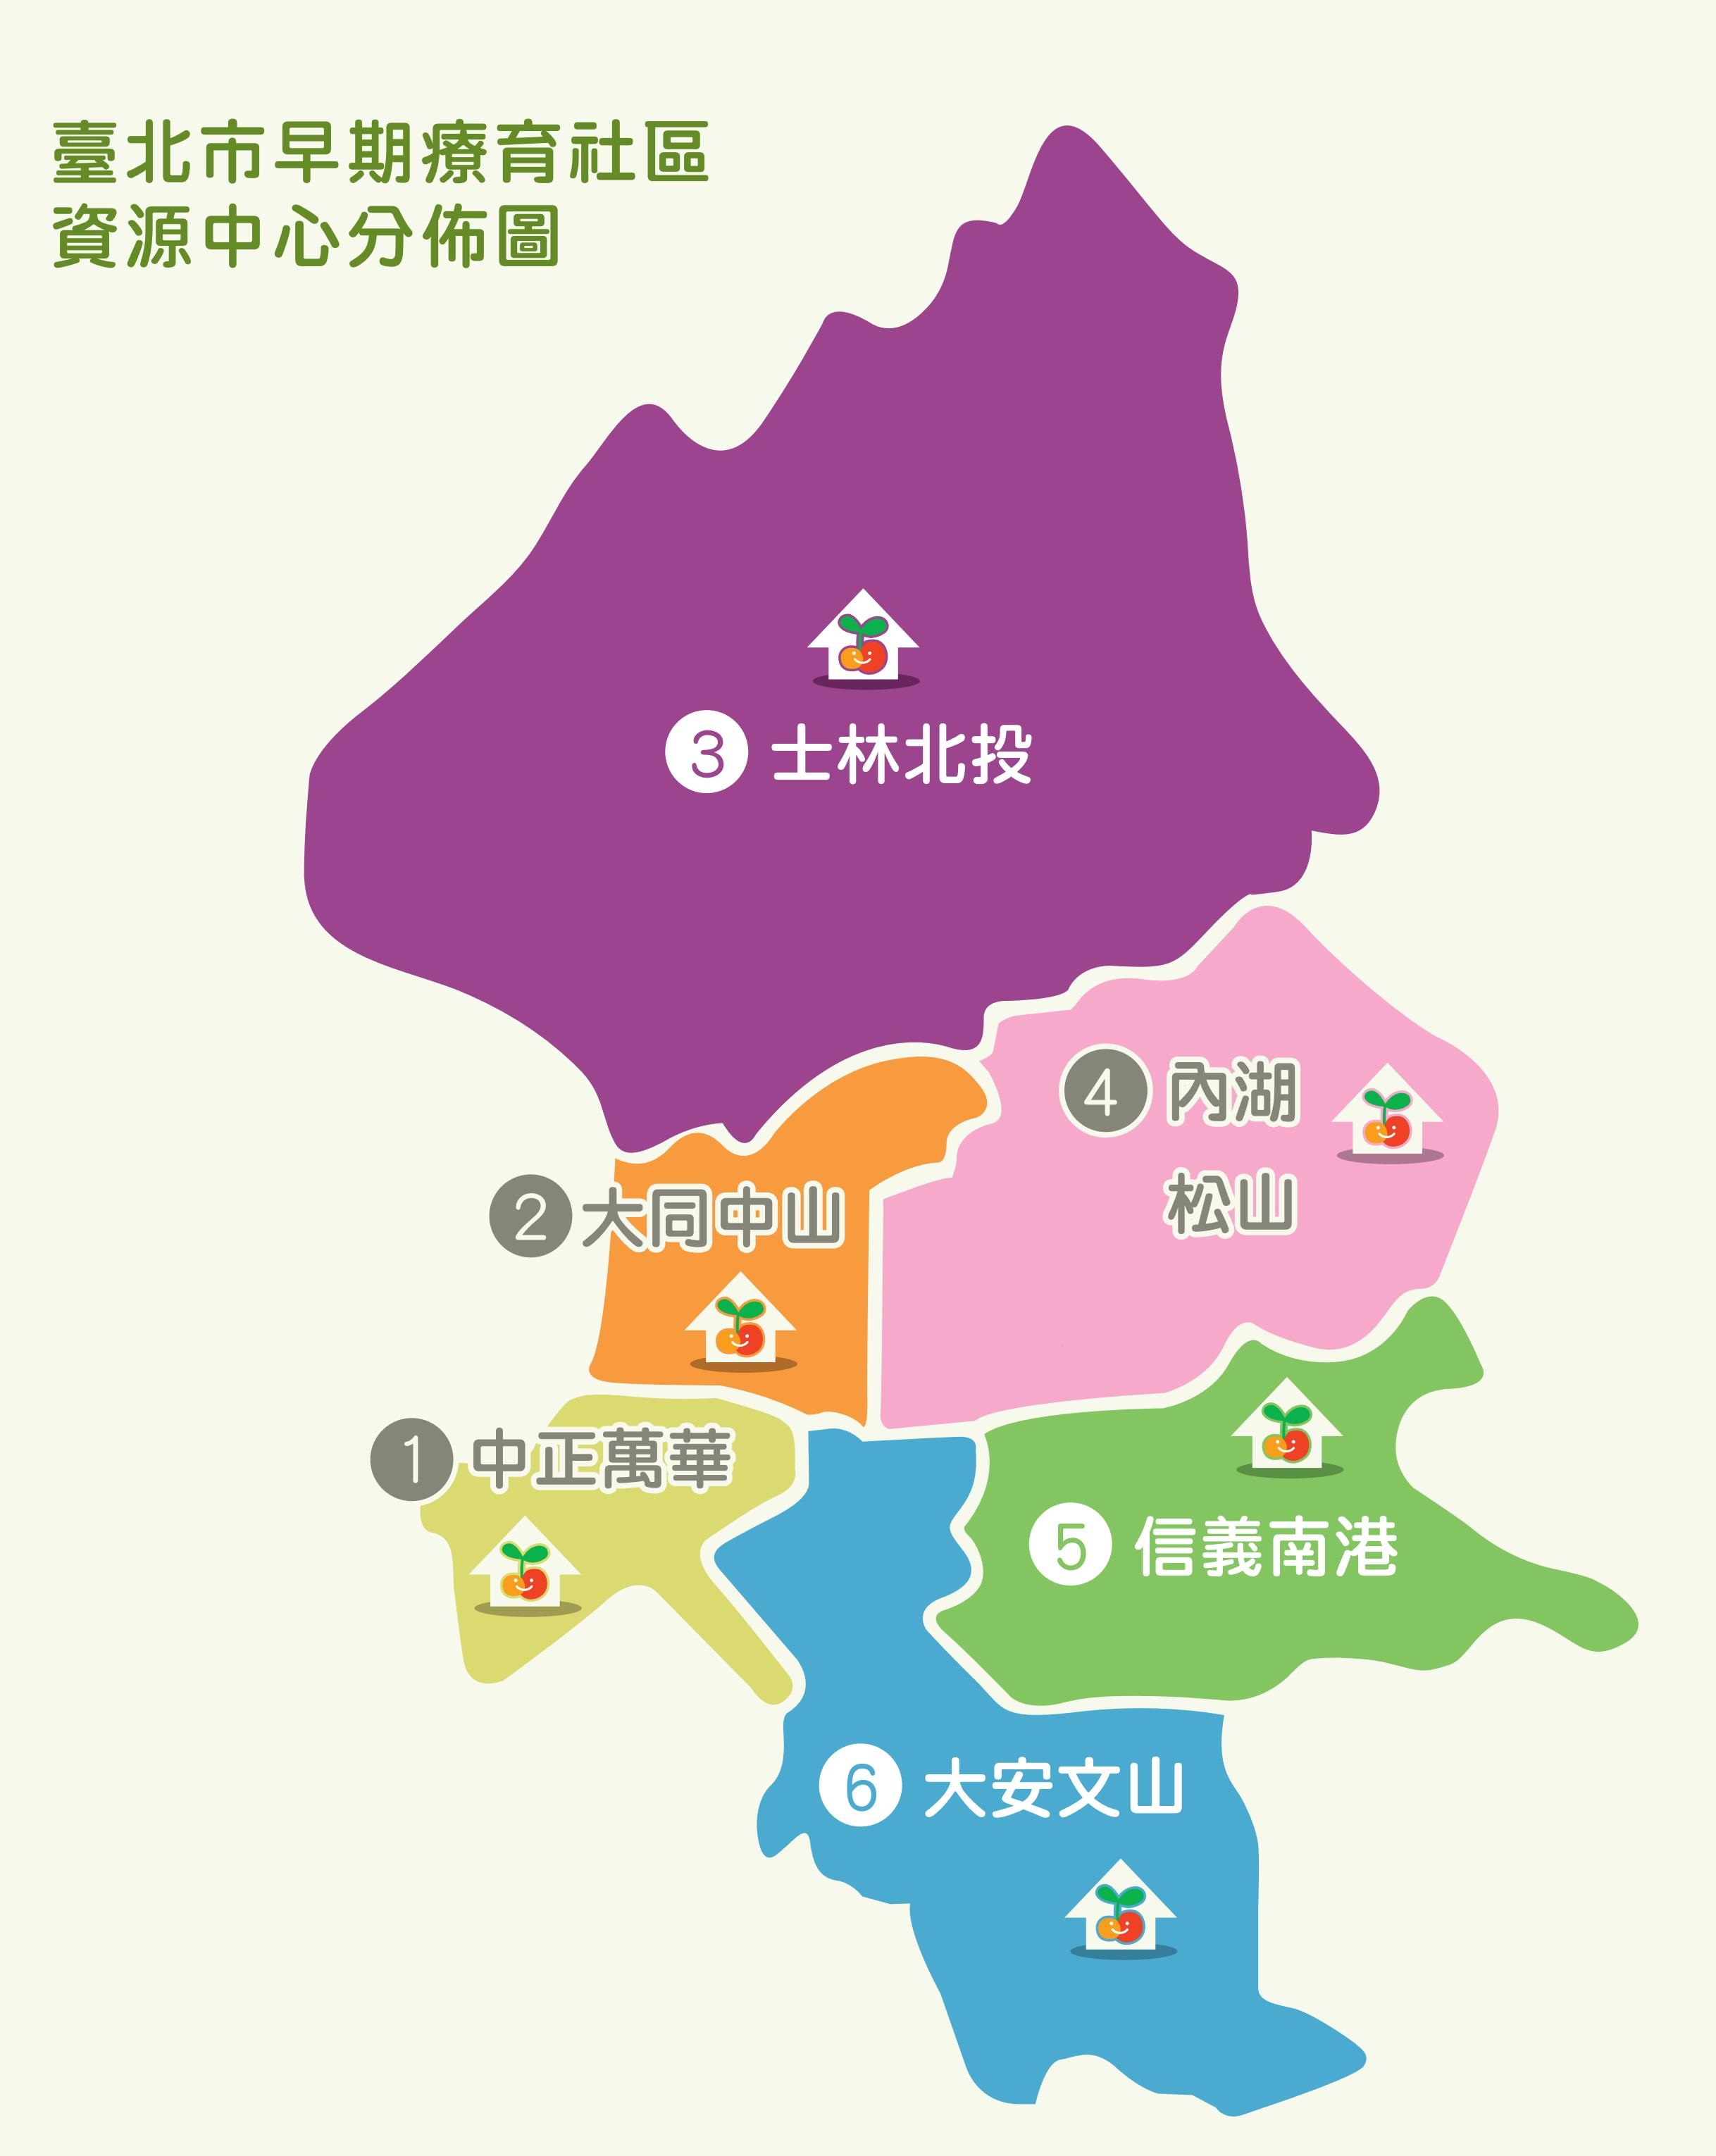 臺北市社區資源中心分佈圖